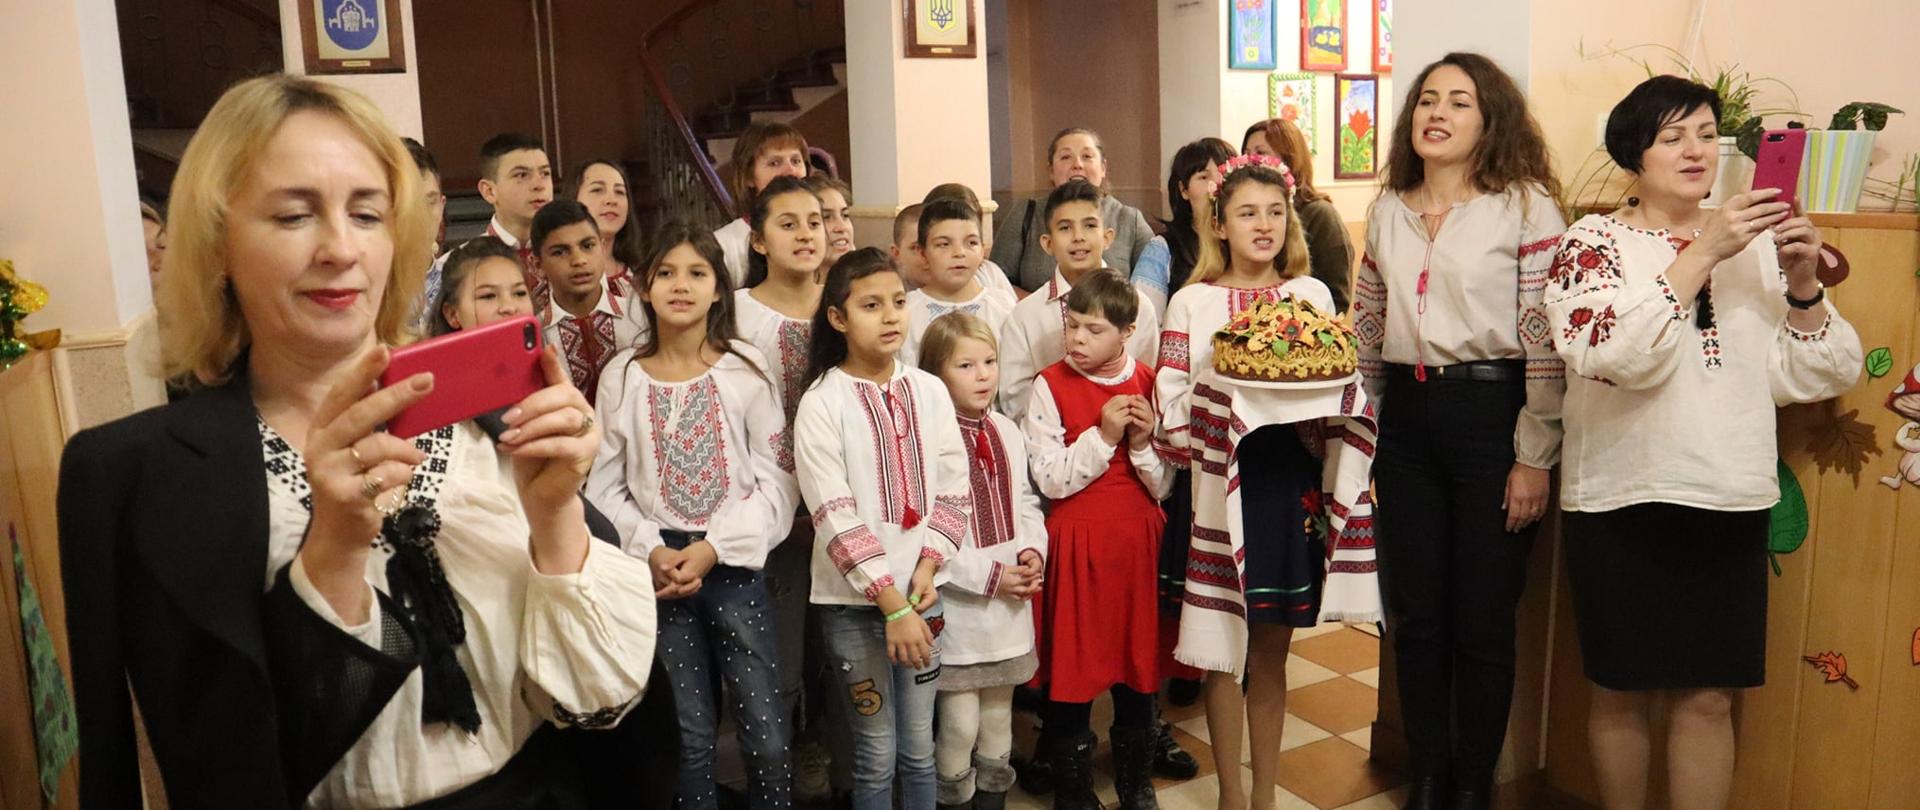 Dzieci ubrane w tradycyjne stroje ukraińskie stoi w rzędzie. Jedna dziewczynka trzyma w rękach udekorowane ciasto. Trzy nauczycielki stoją obok grupy dzieci, robiąc zdjęcia komórką. 